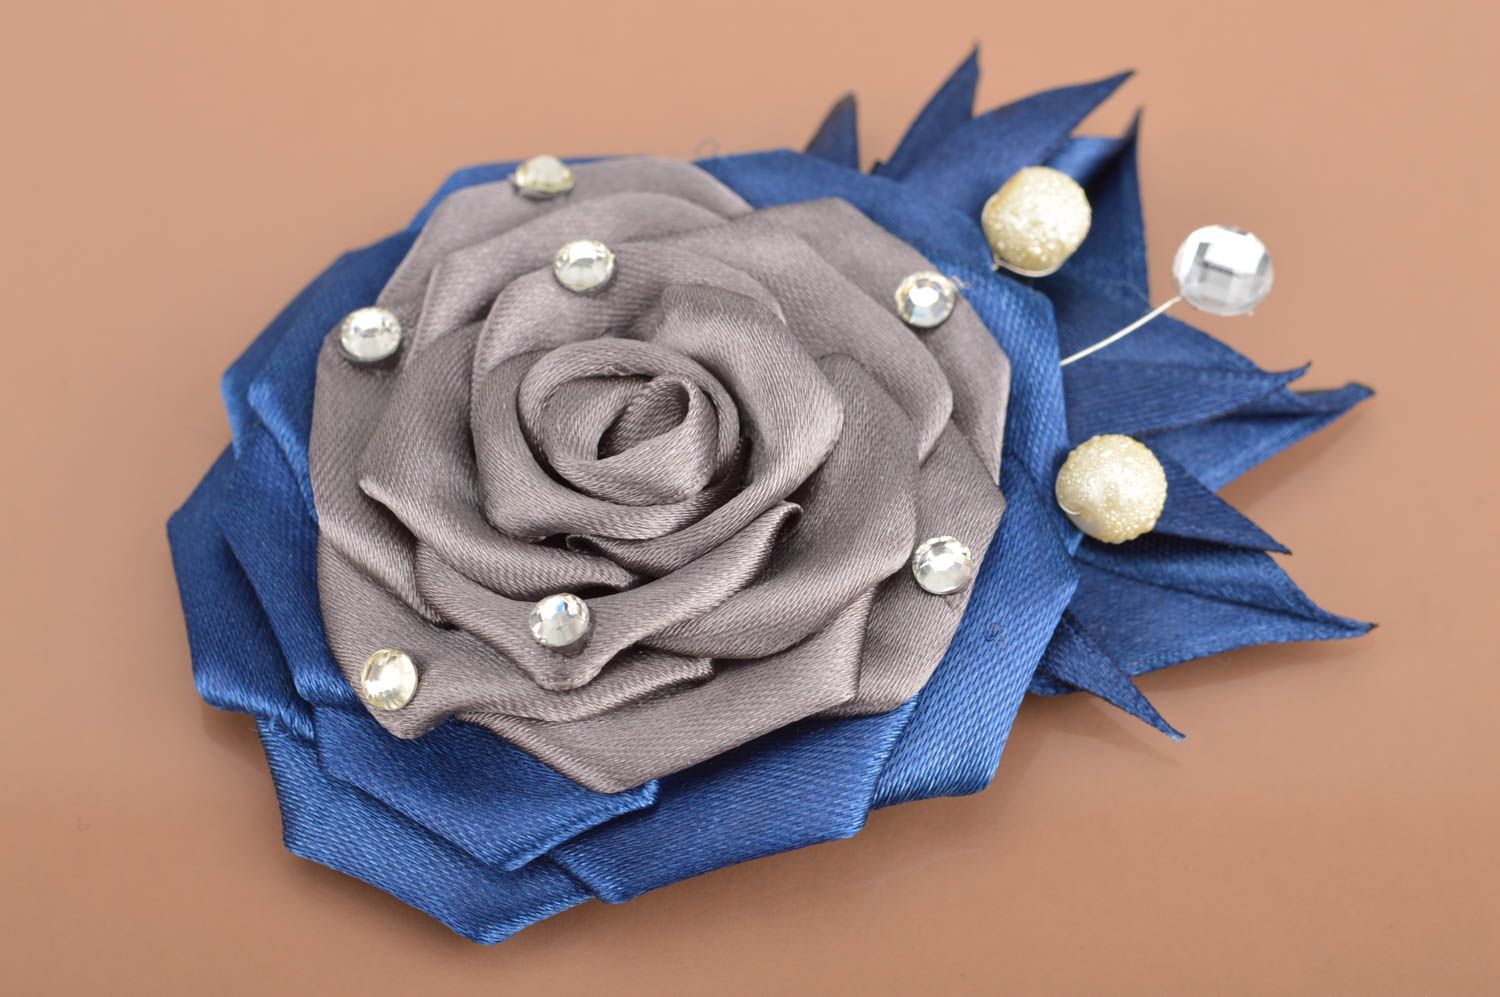 Синяя с серым брошь из атласа ручной работы в виде цветка нарядная красивая фото 2